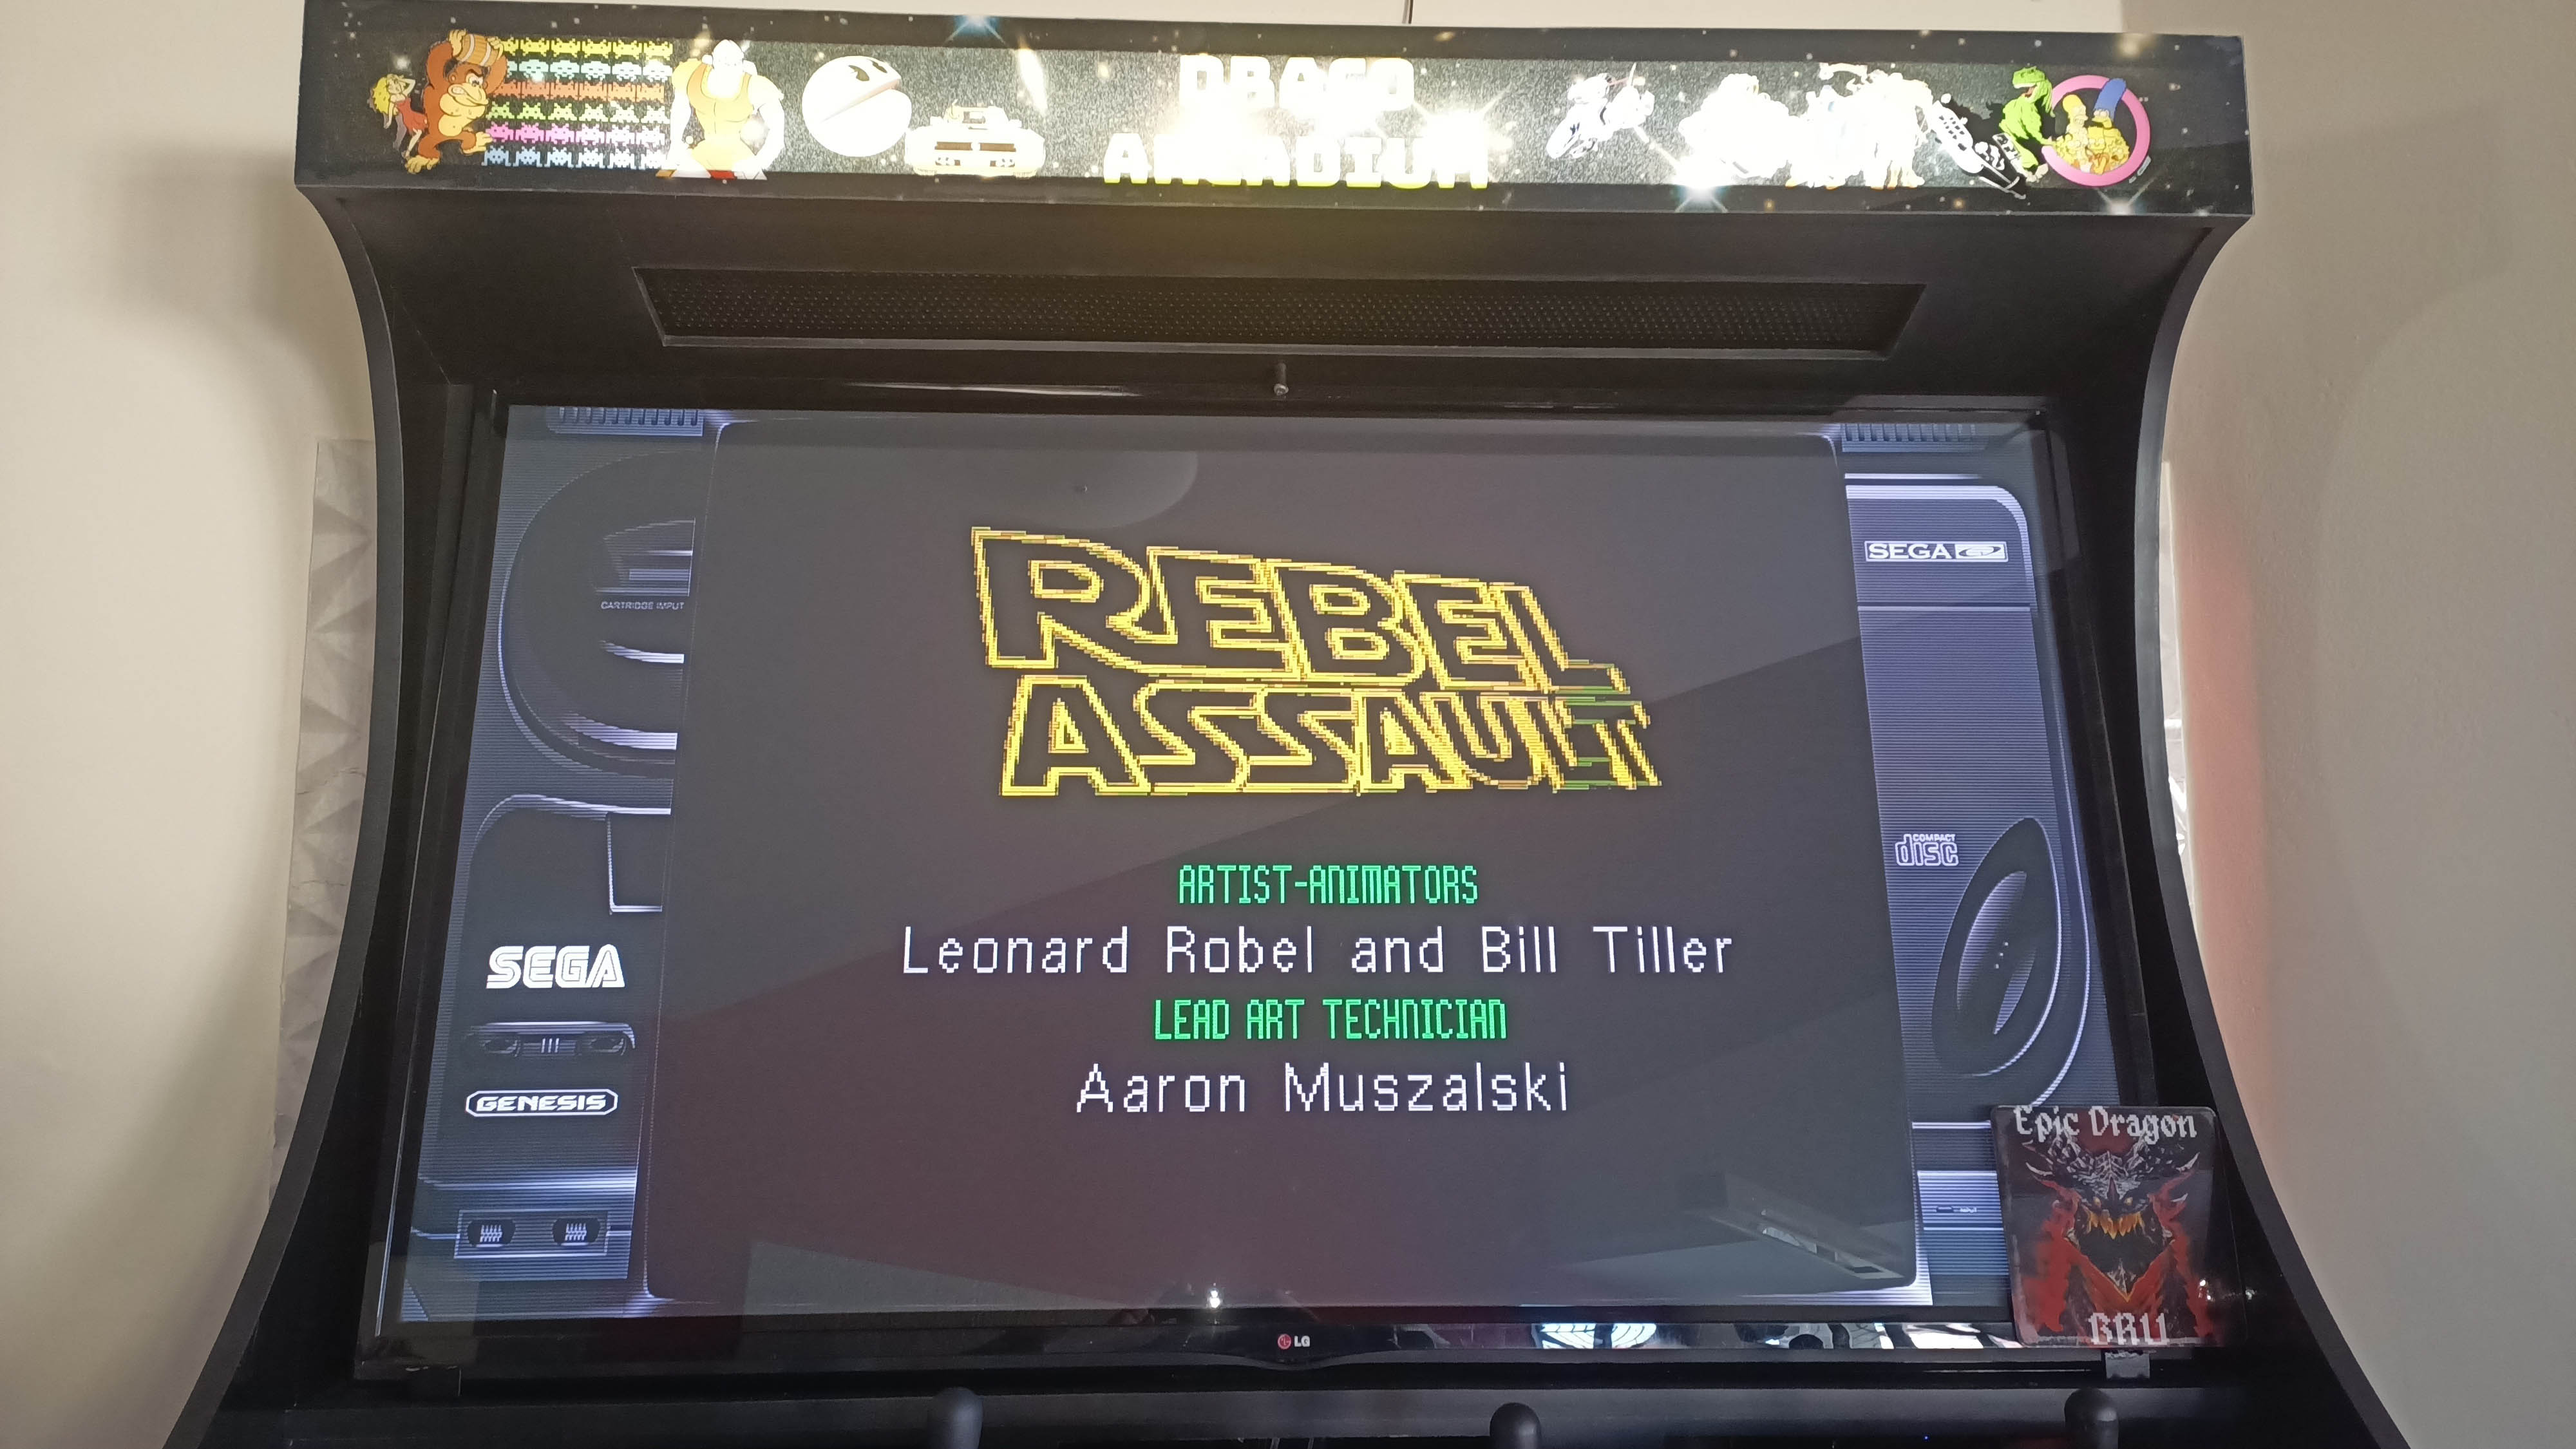 EpicDragon: Star Wars: Rebel Assault [Sega CD] (Sega Genesis / MegaDrive Emulated) 5,355 points on 2022-08-24 17:42:20